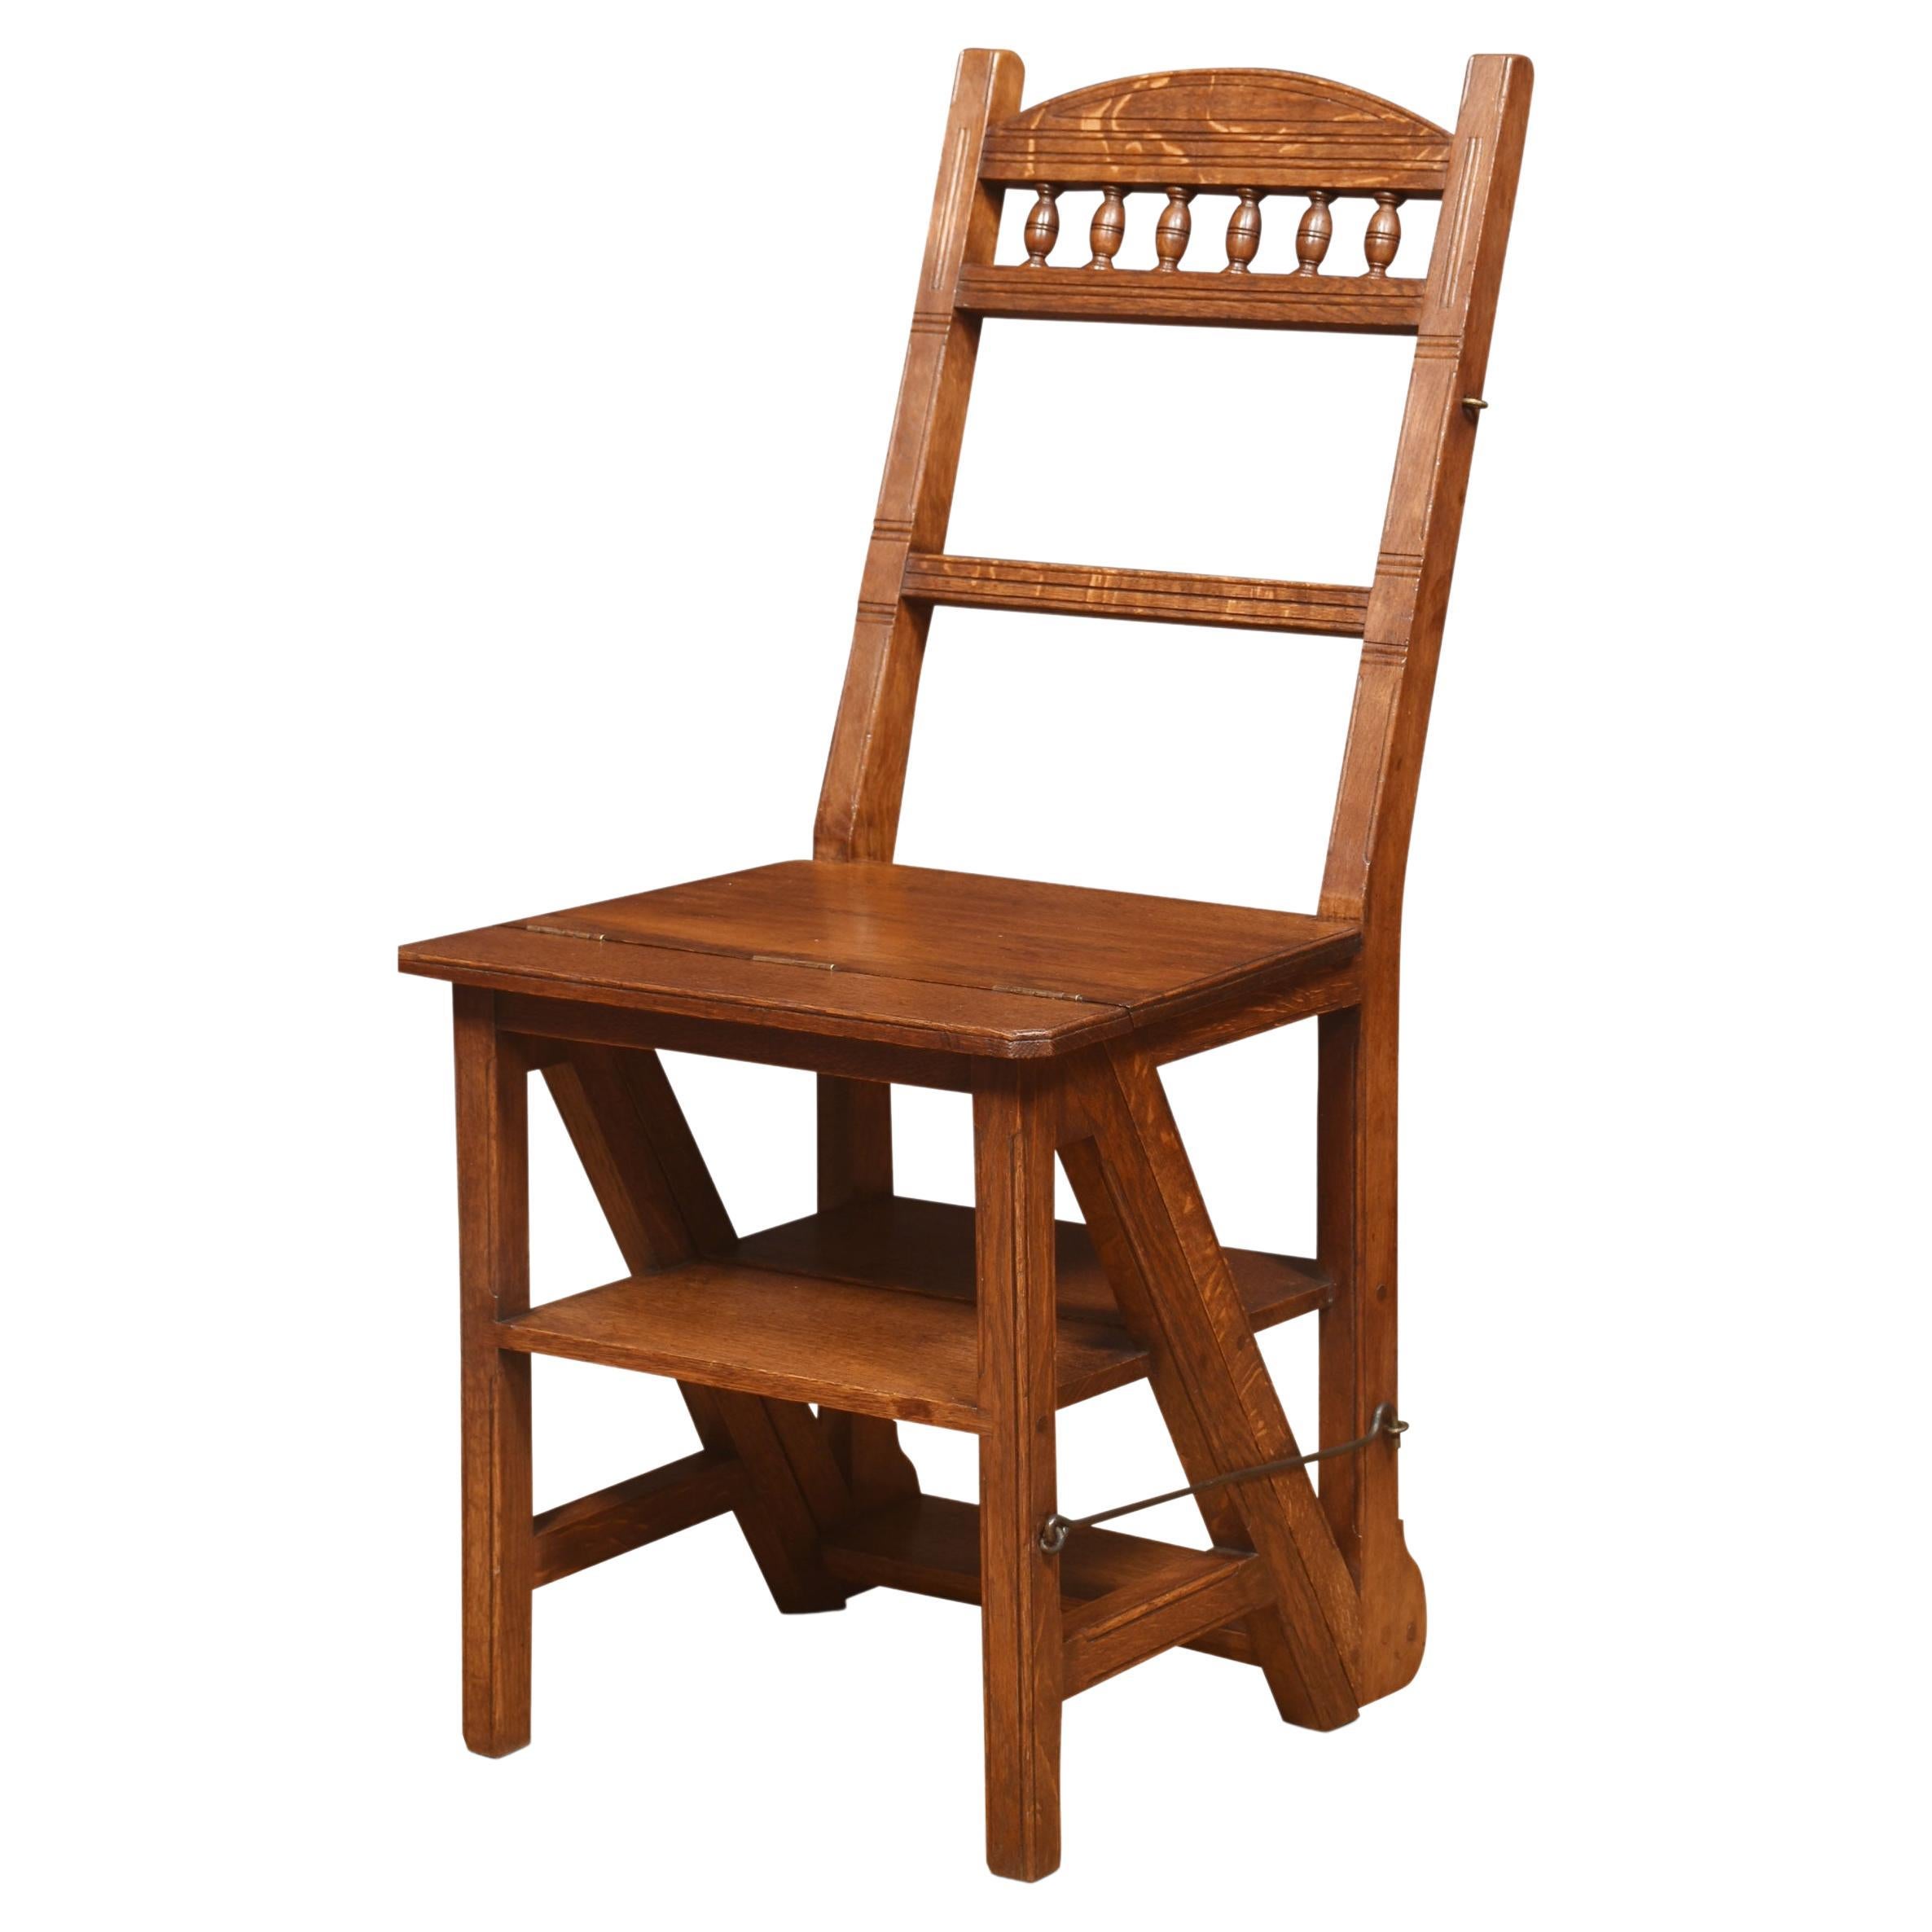 Metamorphischer Stuhl aus Eiche, 19. Jahrhundert